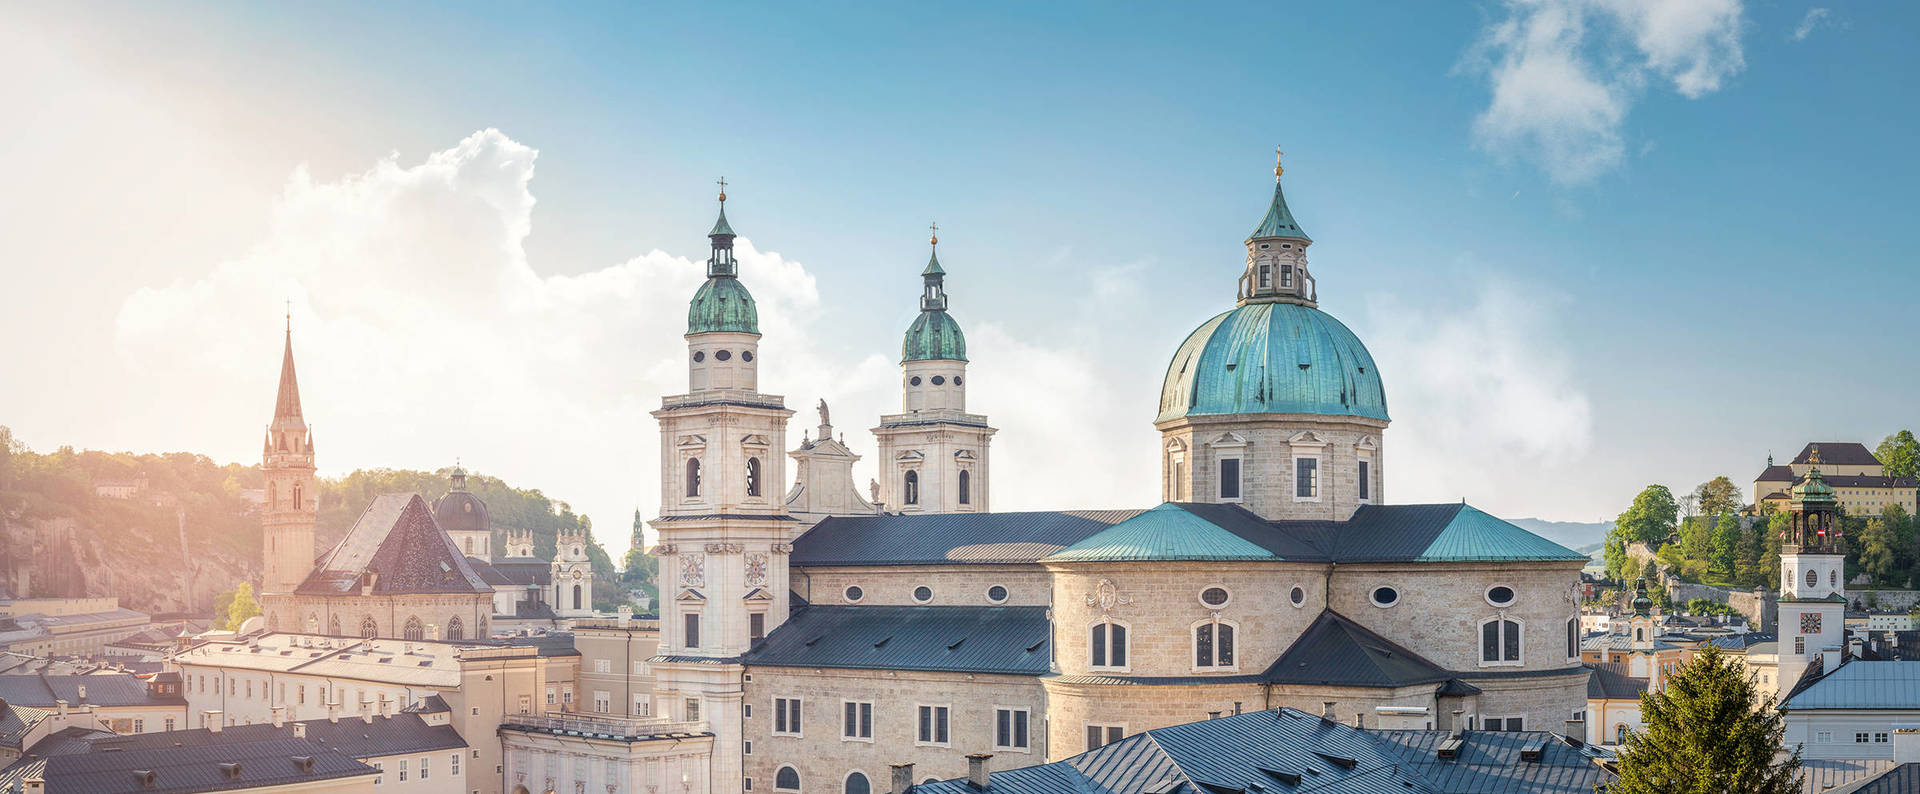 Dein Stellenangebot in der traditionsreichen Residenzstadt Salzburg bei H-Hotels.com